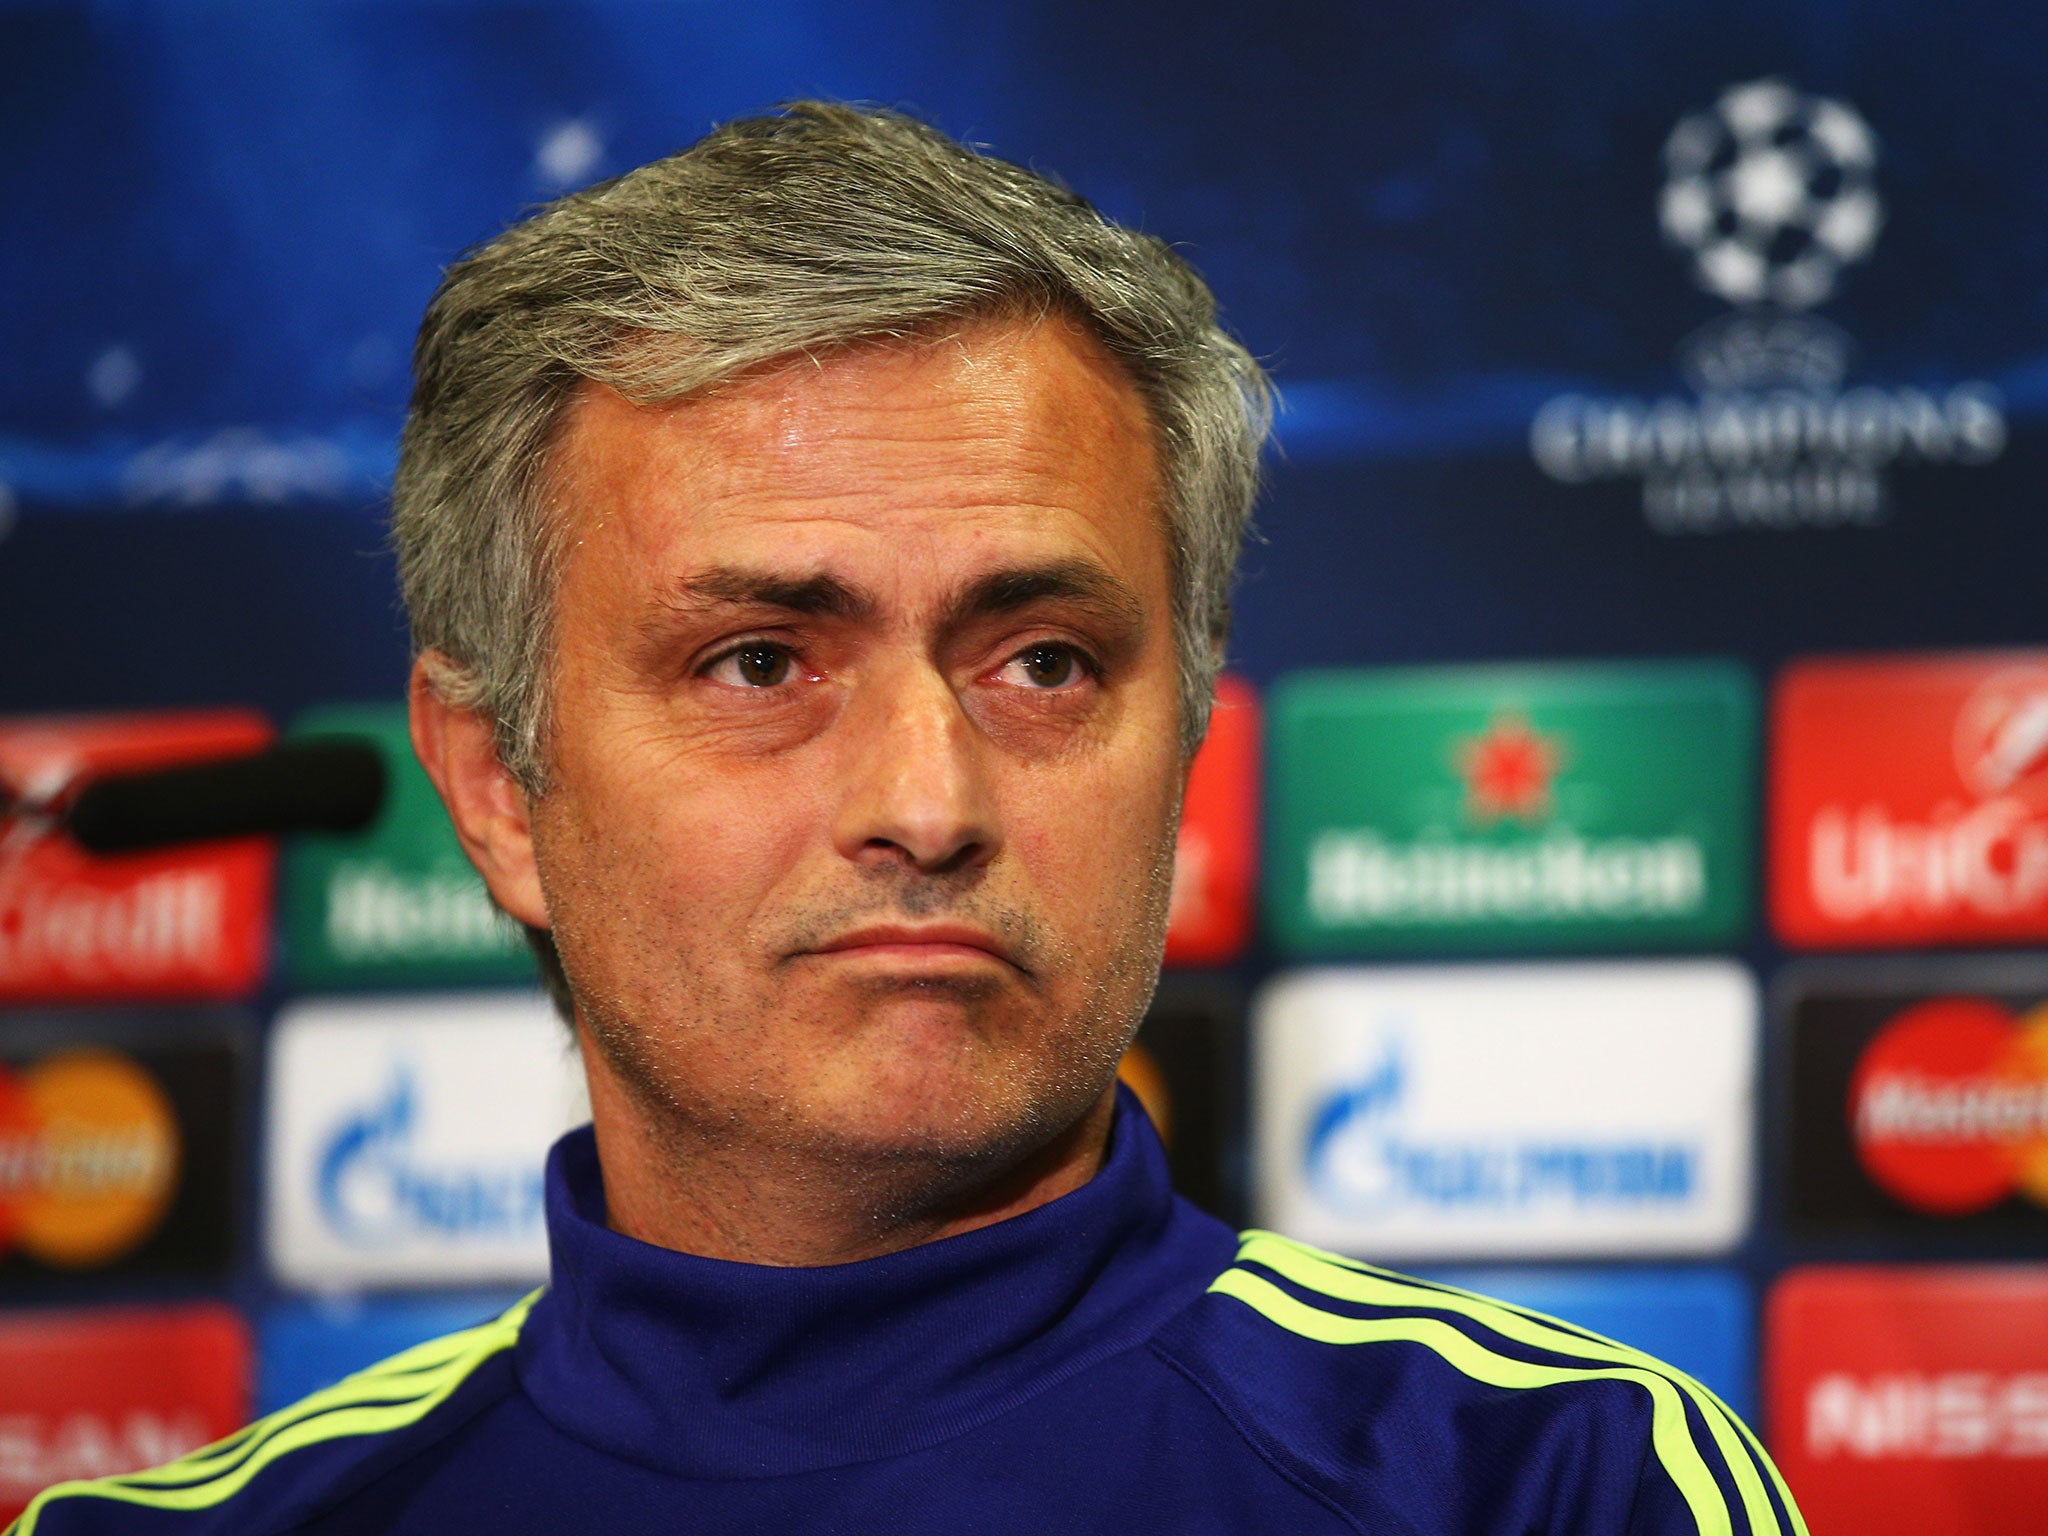 Jose Mourinho has promised to play Riben Loftus-Cheek next season